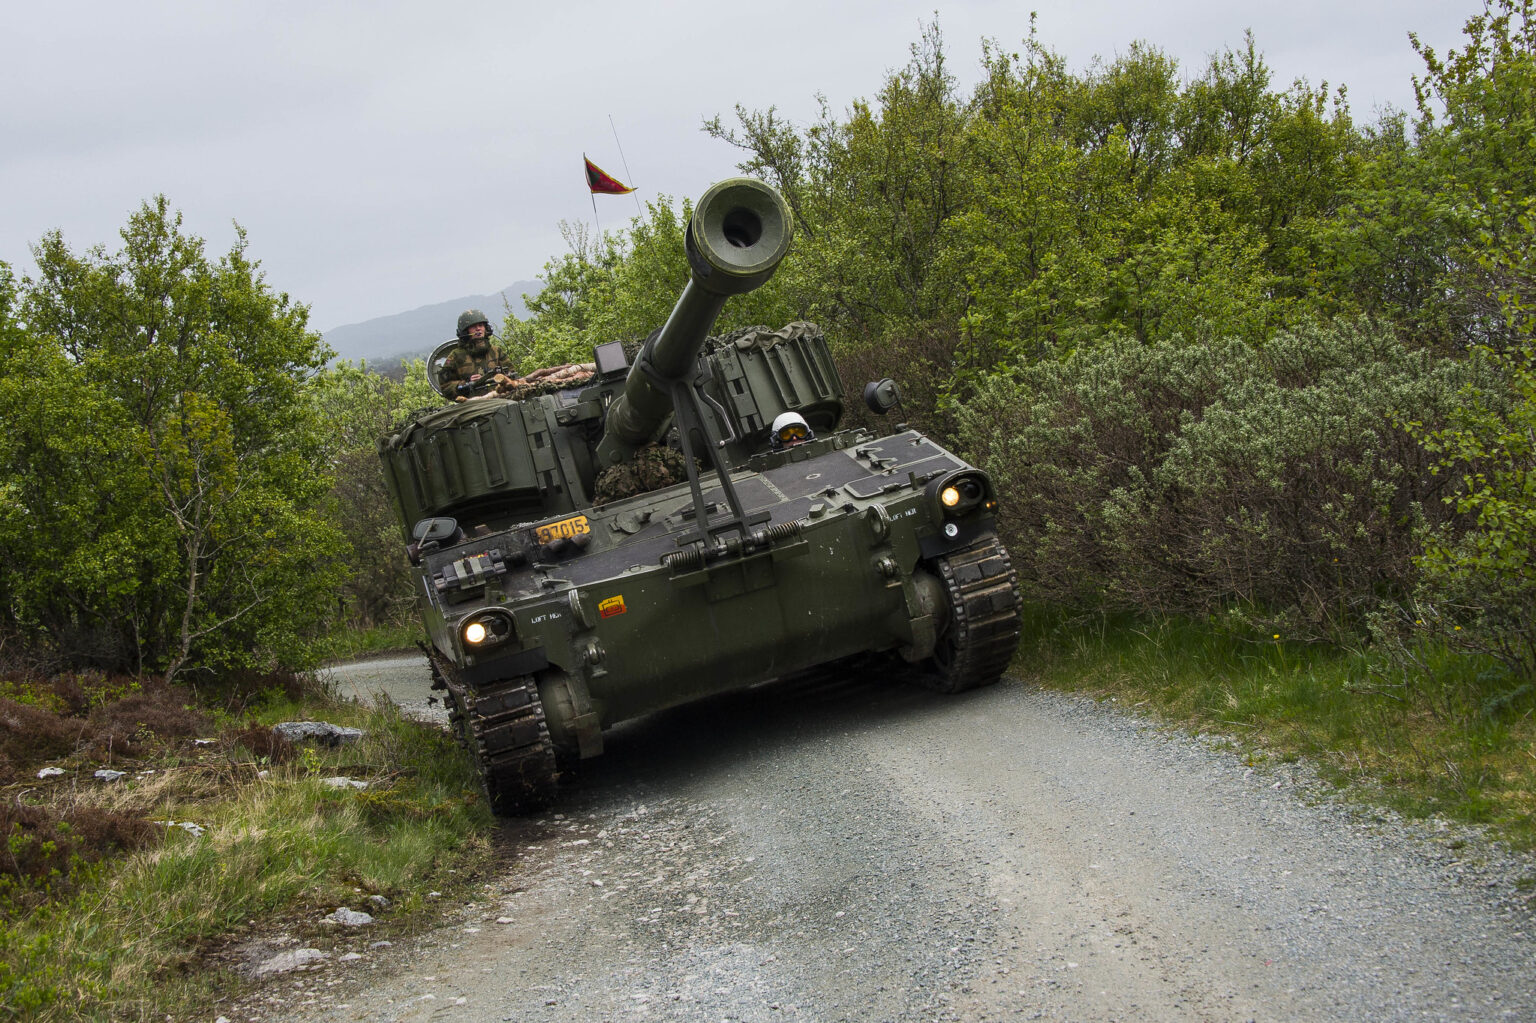 Norwegian self-propelled howitzers spotted in Ukraine